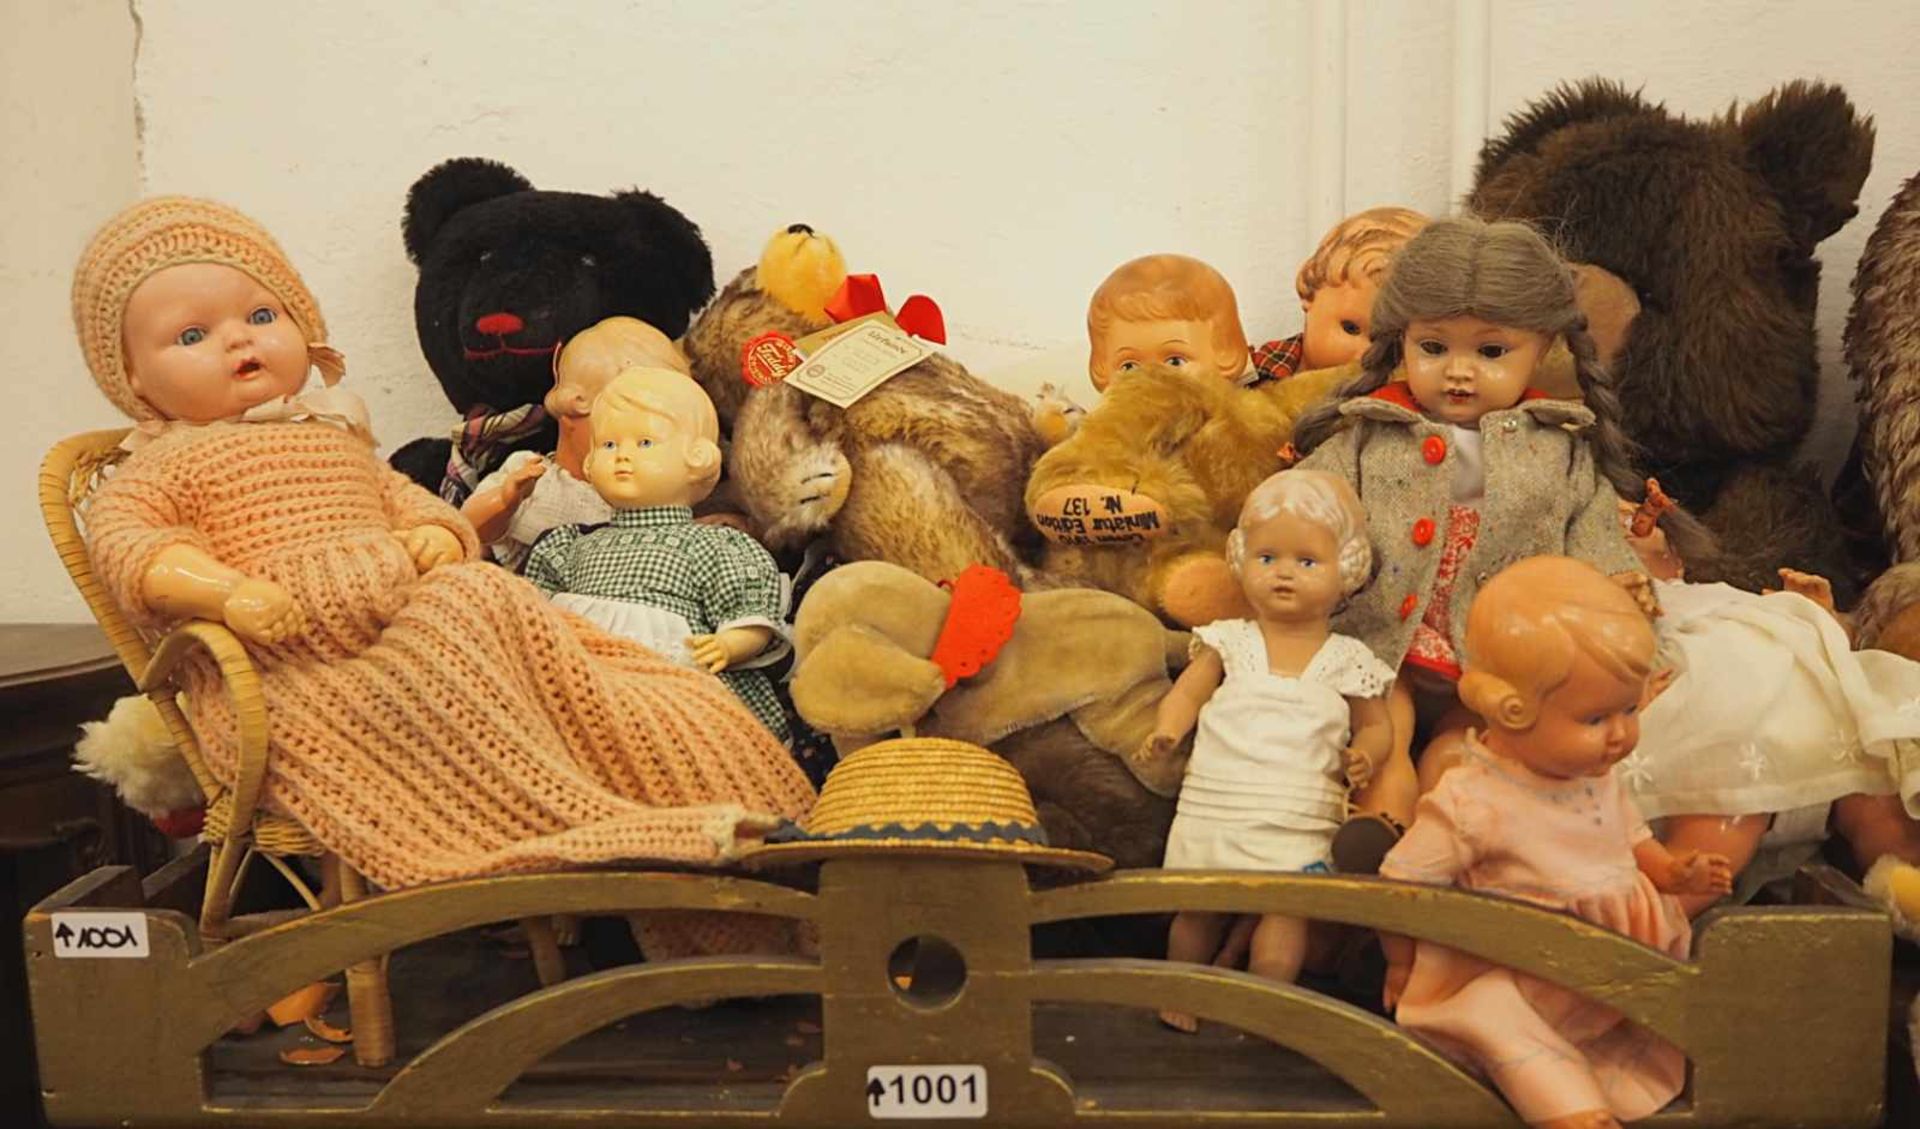 1 großes Konvolut Puppen, Puppenbekleidung, Stofftiere, Zubehör u.a.STEIFF, HERMANN, SCHILDKRÖT,